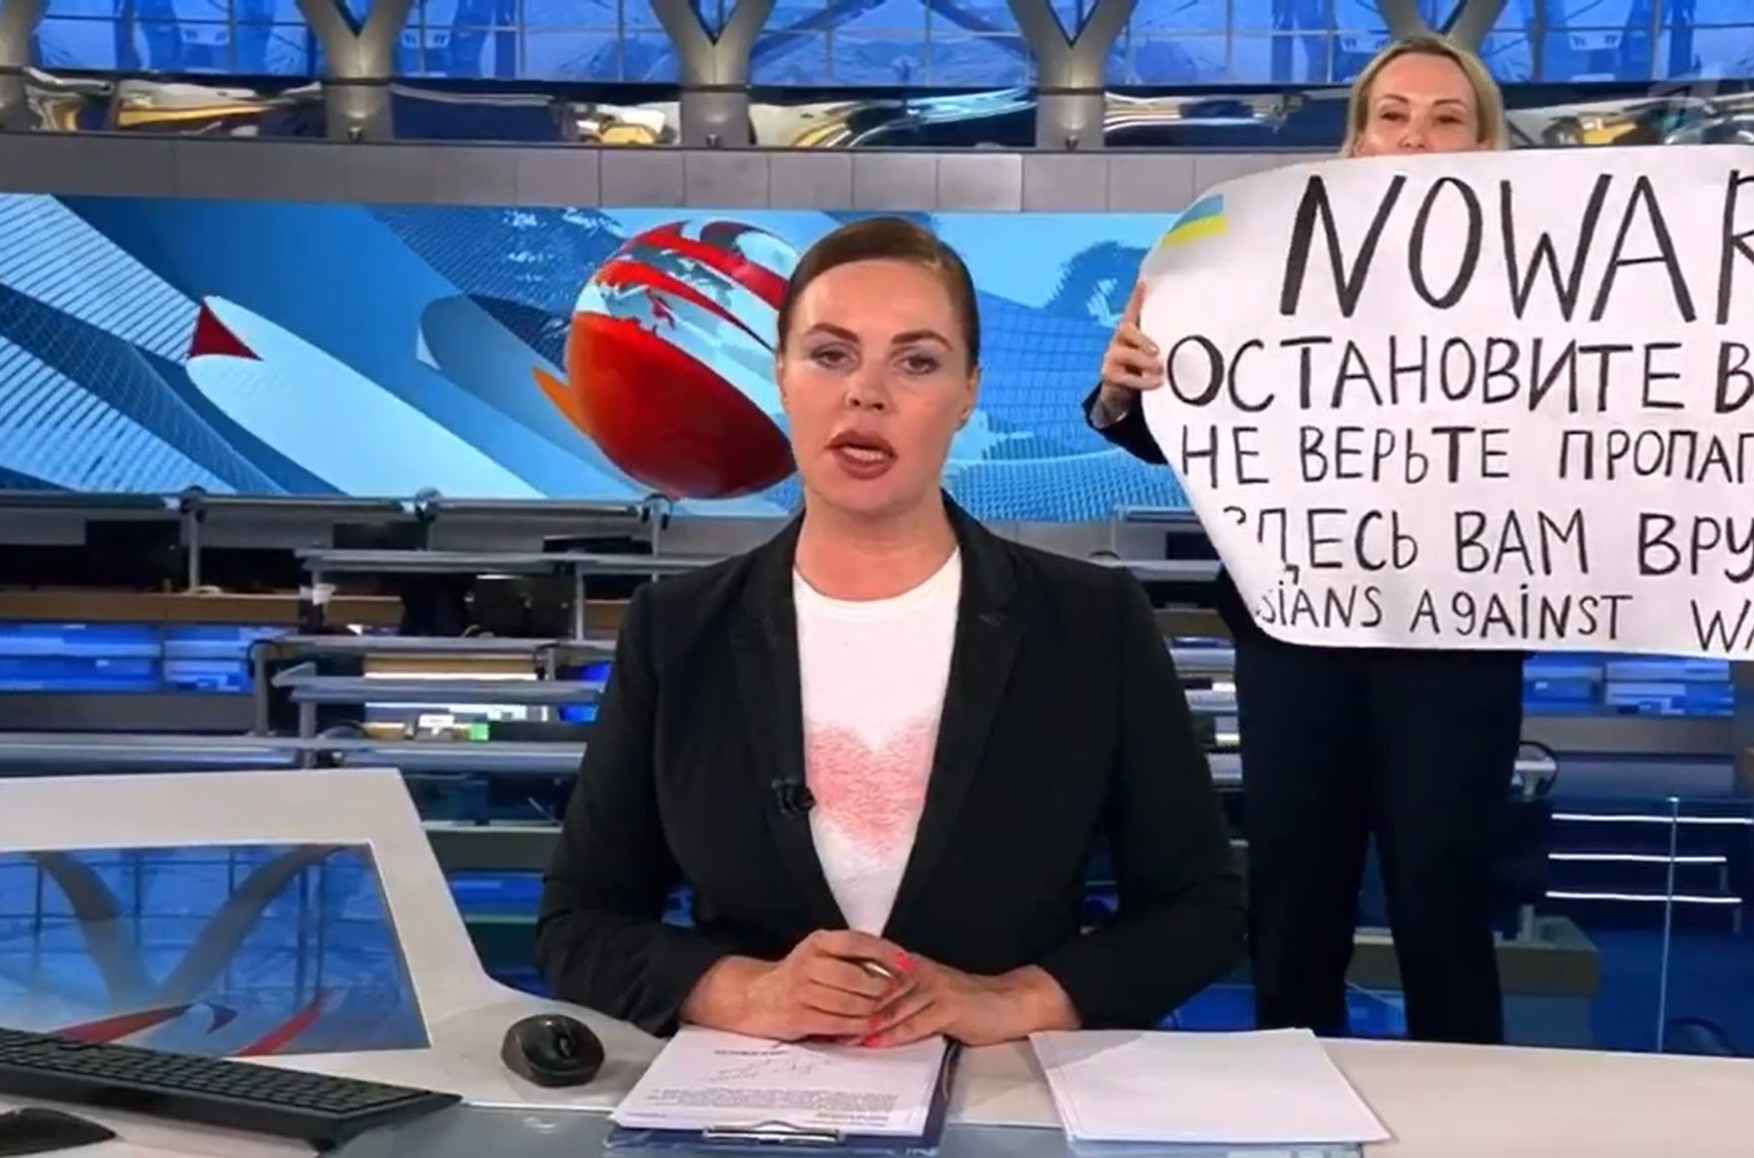 Овсянниковой предъявили обвинение по статье за «фейки» об армии, ей может грозить до 10 лет лишения свободы